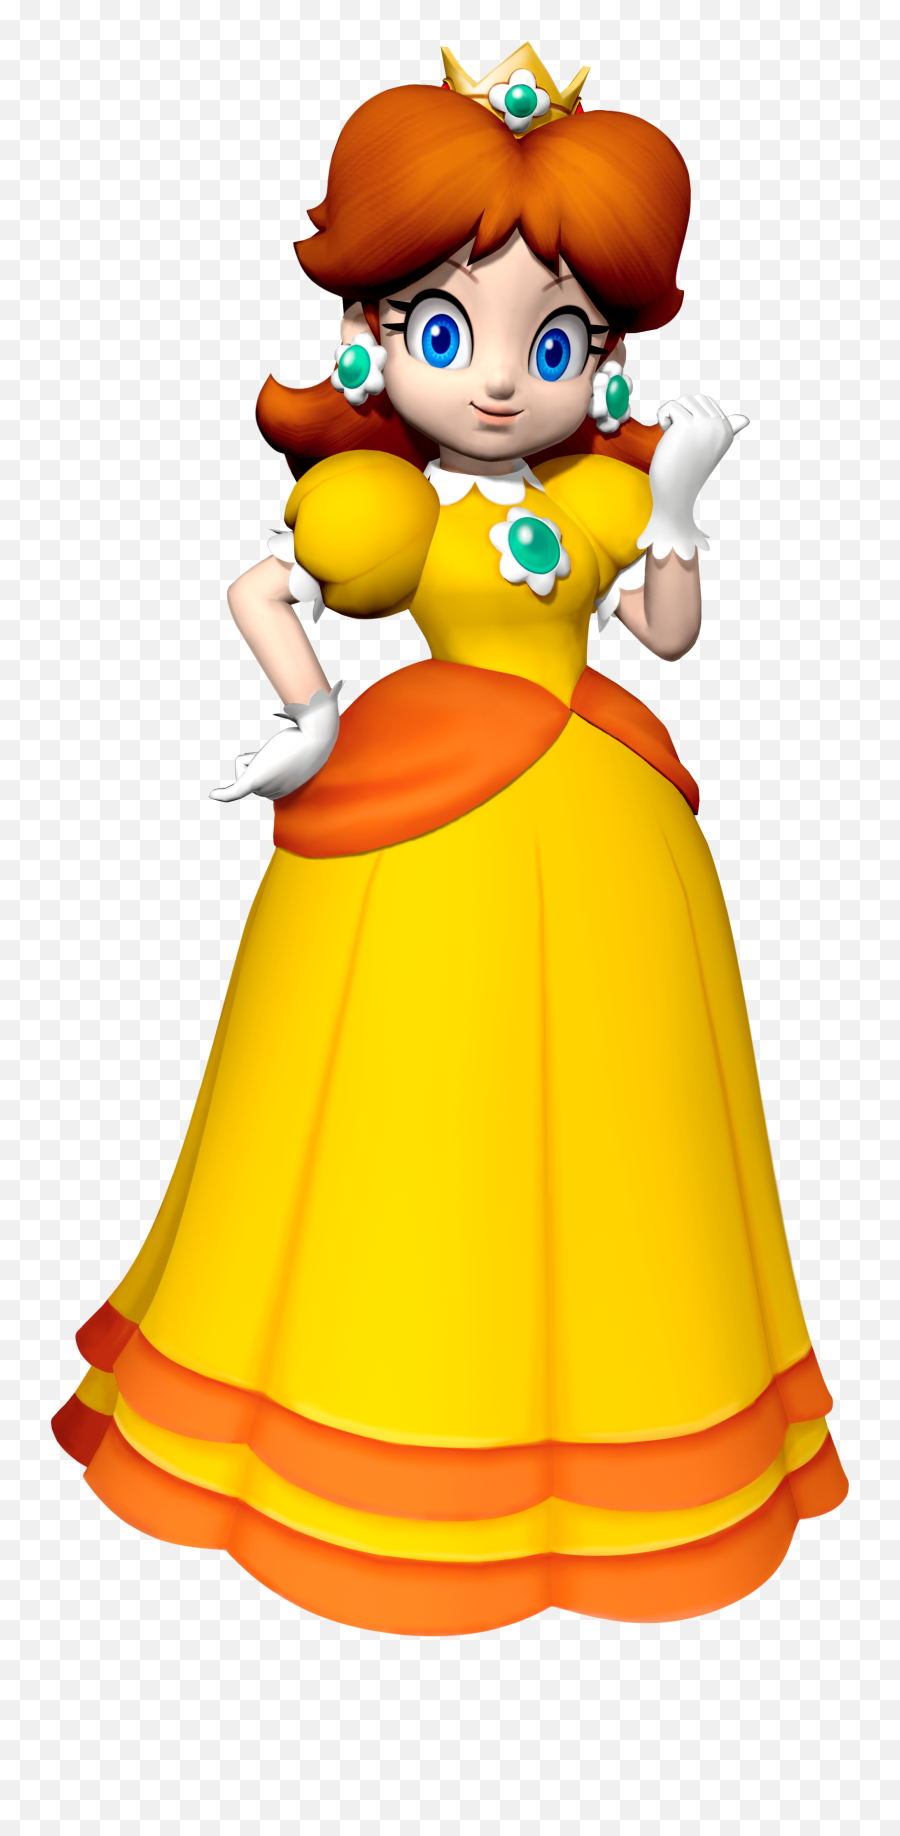 Download Princess Daisy - Princess Daisy Png,Princess Daisy Png